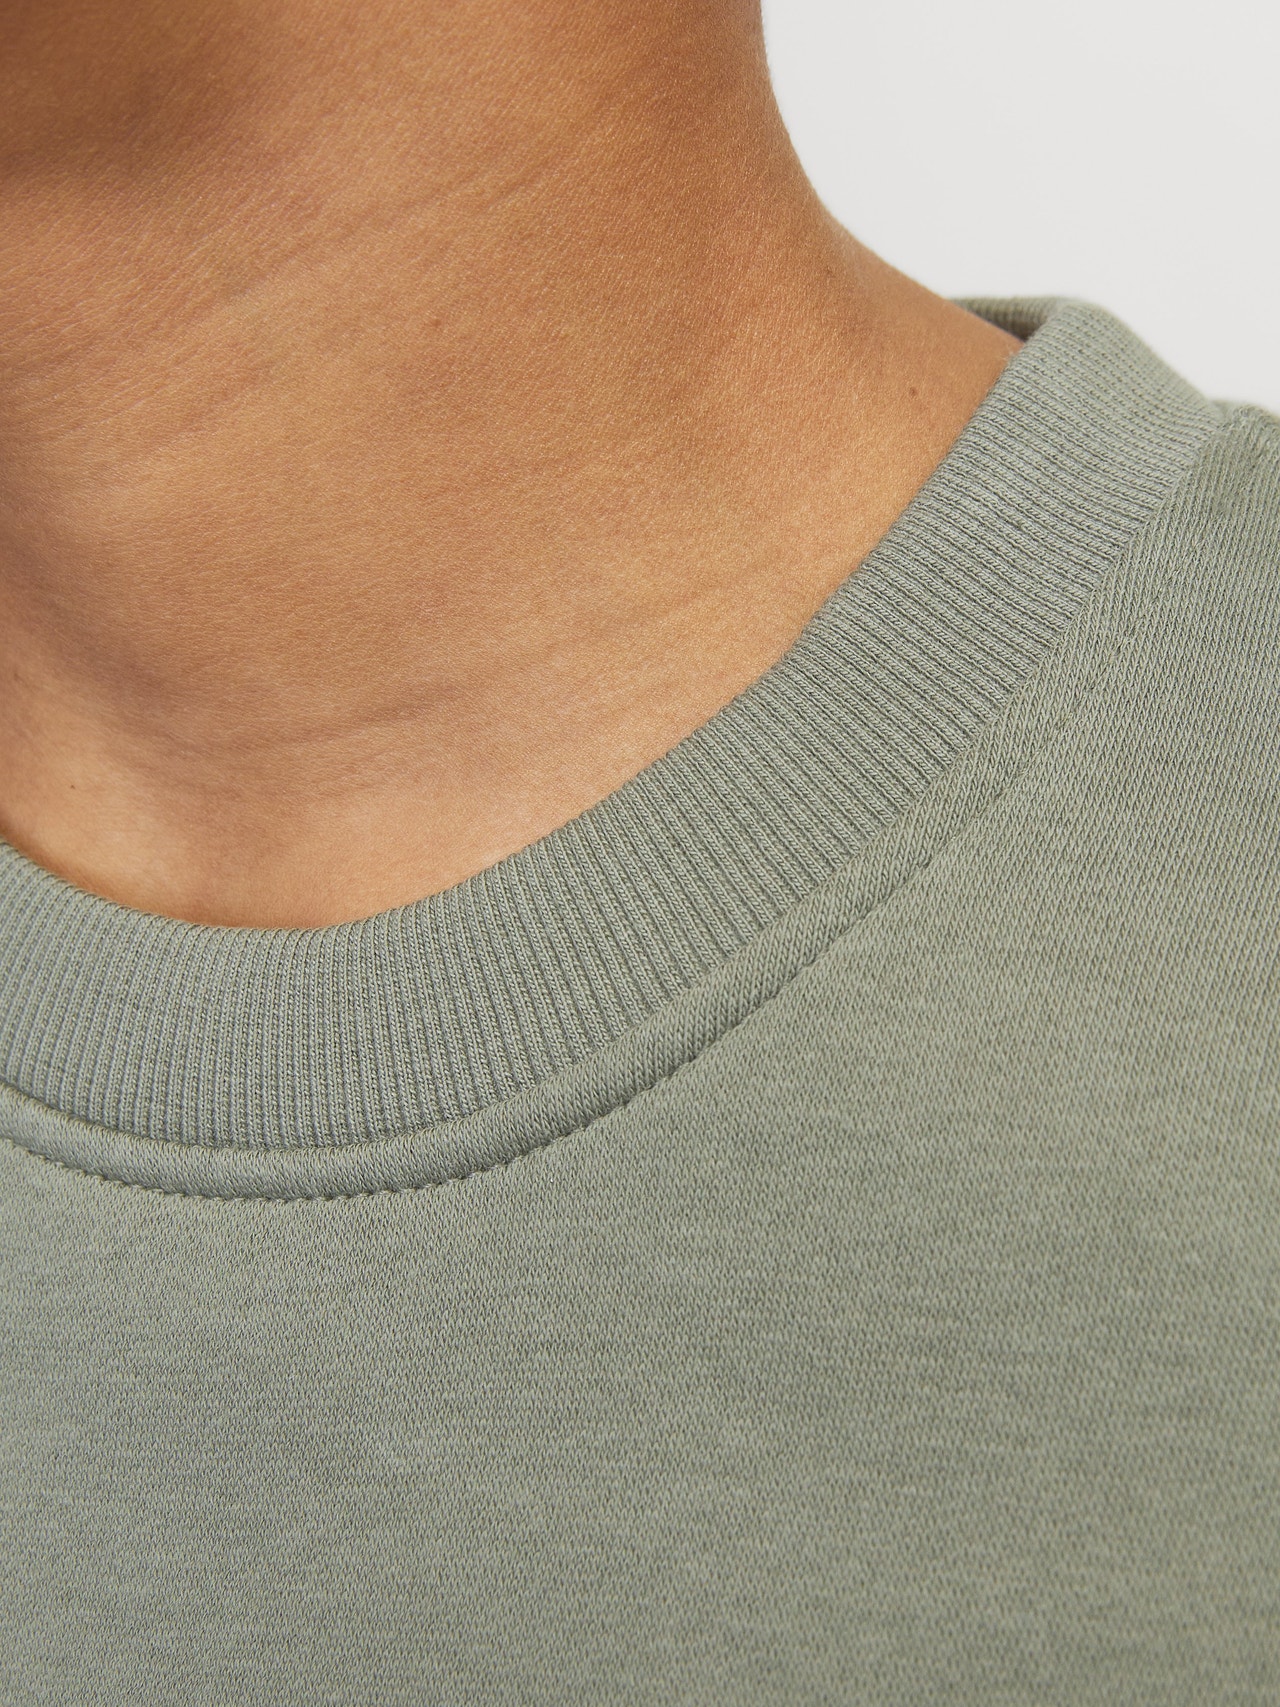 Jack & Jones Nyomott mintás Személyzeti nyakú pulóver Mini -Agave Green - 12257441